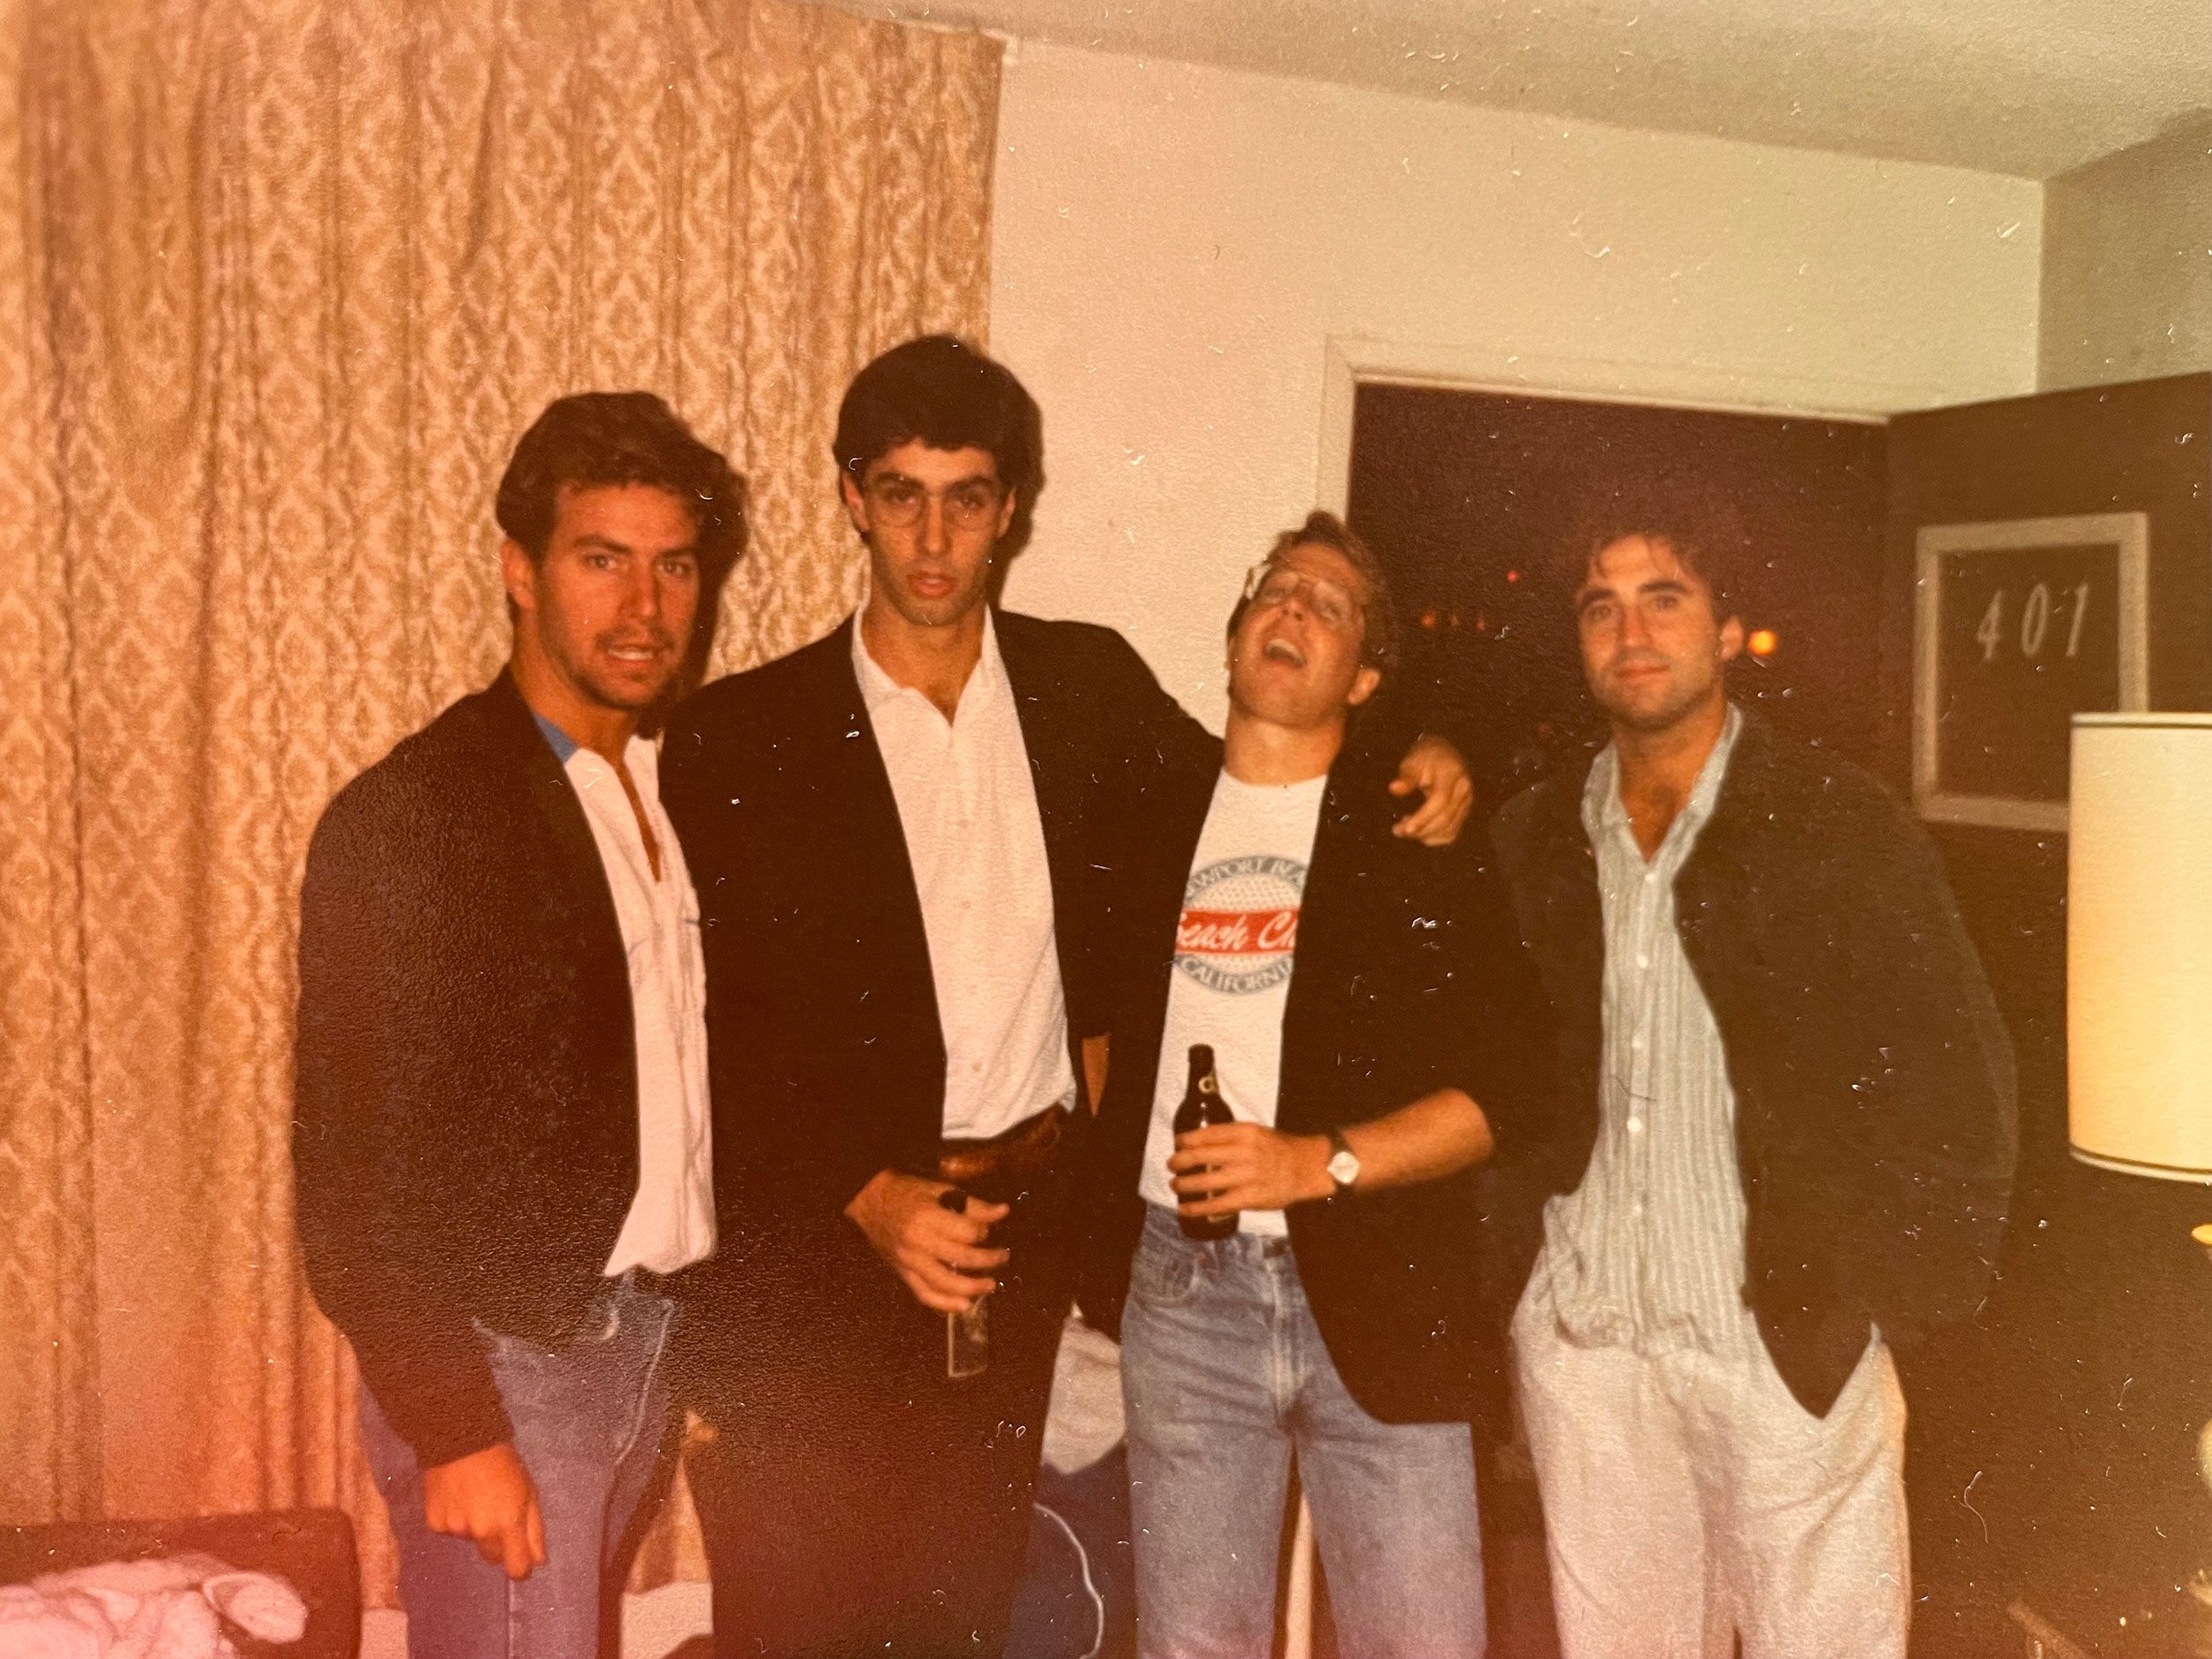 Griggs, segundo desde la izquierda, con su hermano y amigos a mediados de los años 80 en posiblemente la única habitación de motel de Las Vegas que podían pagar.